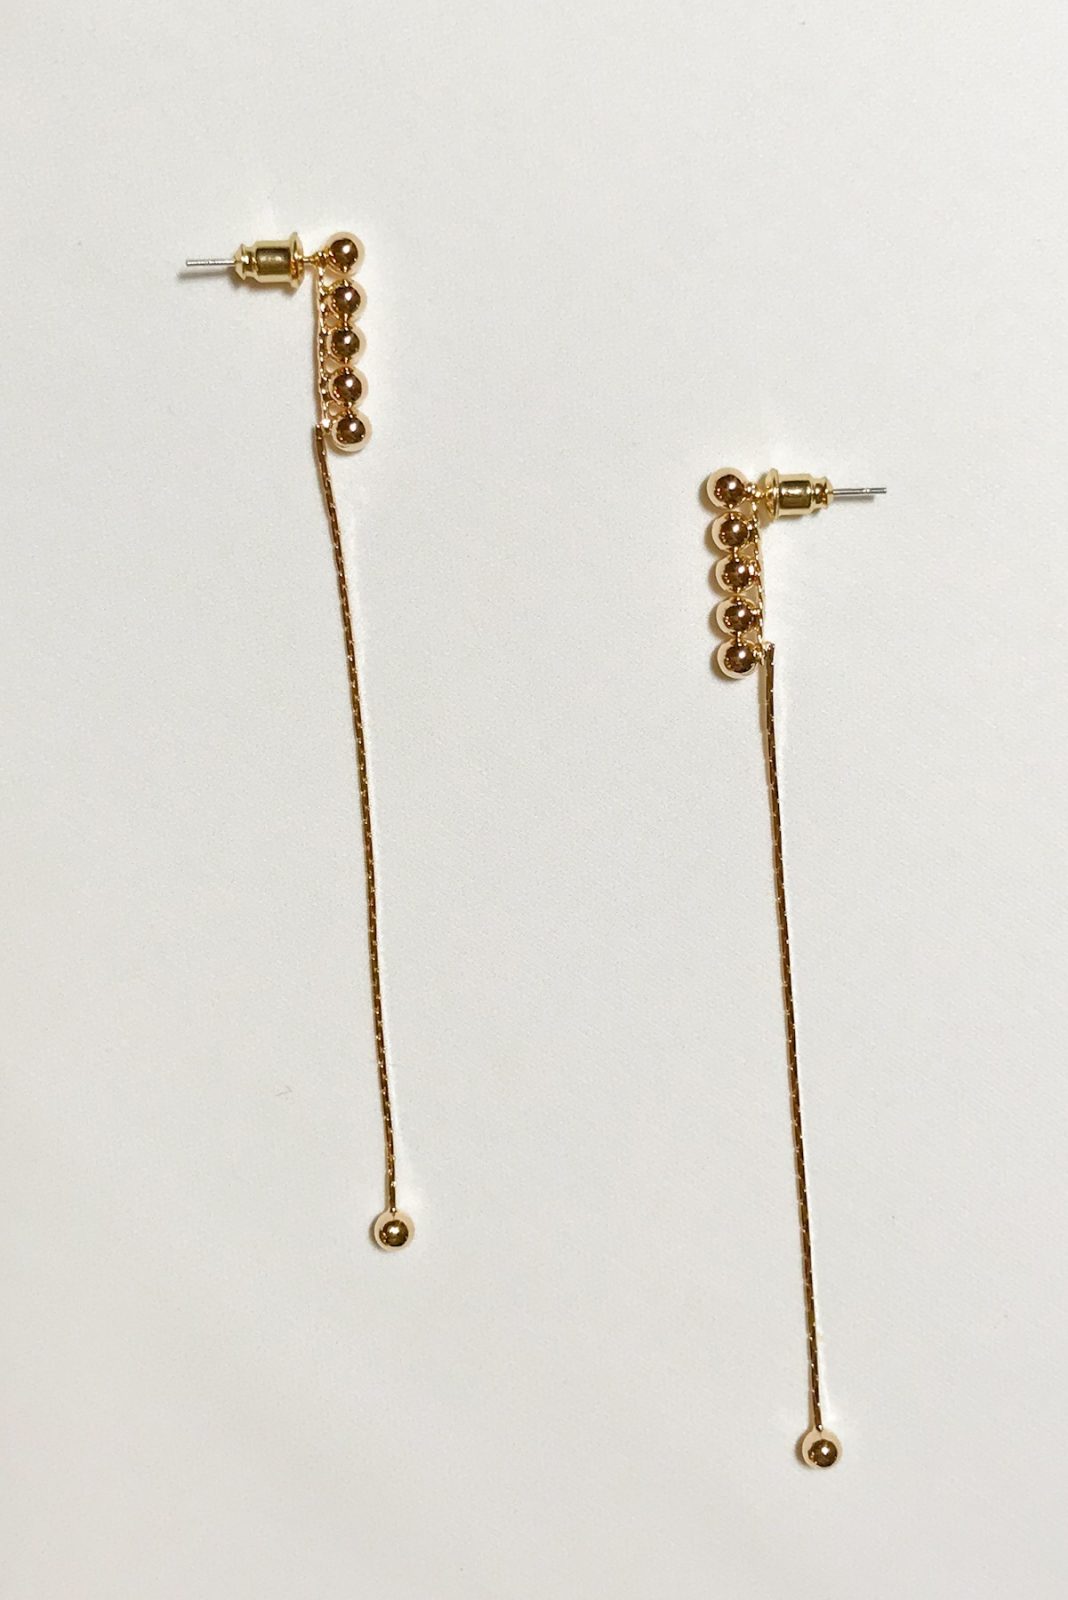 SKYE modern minimalist women fashion accessories Vella 18K Gold Earrings 4